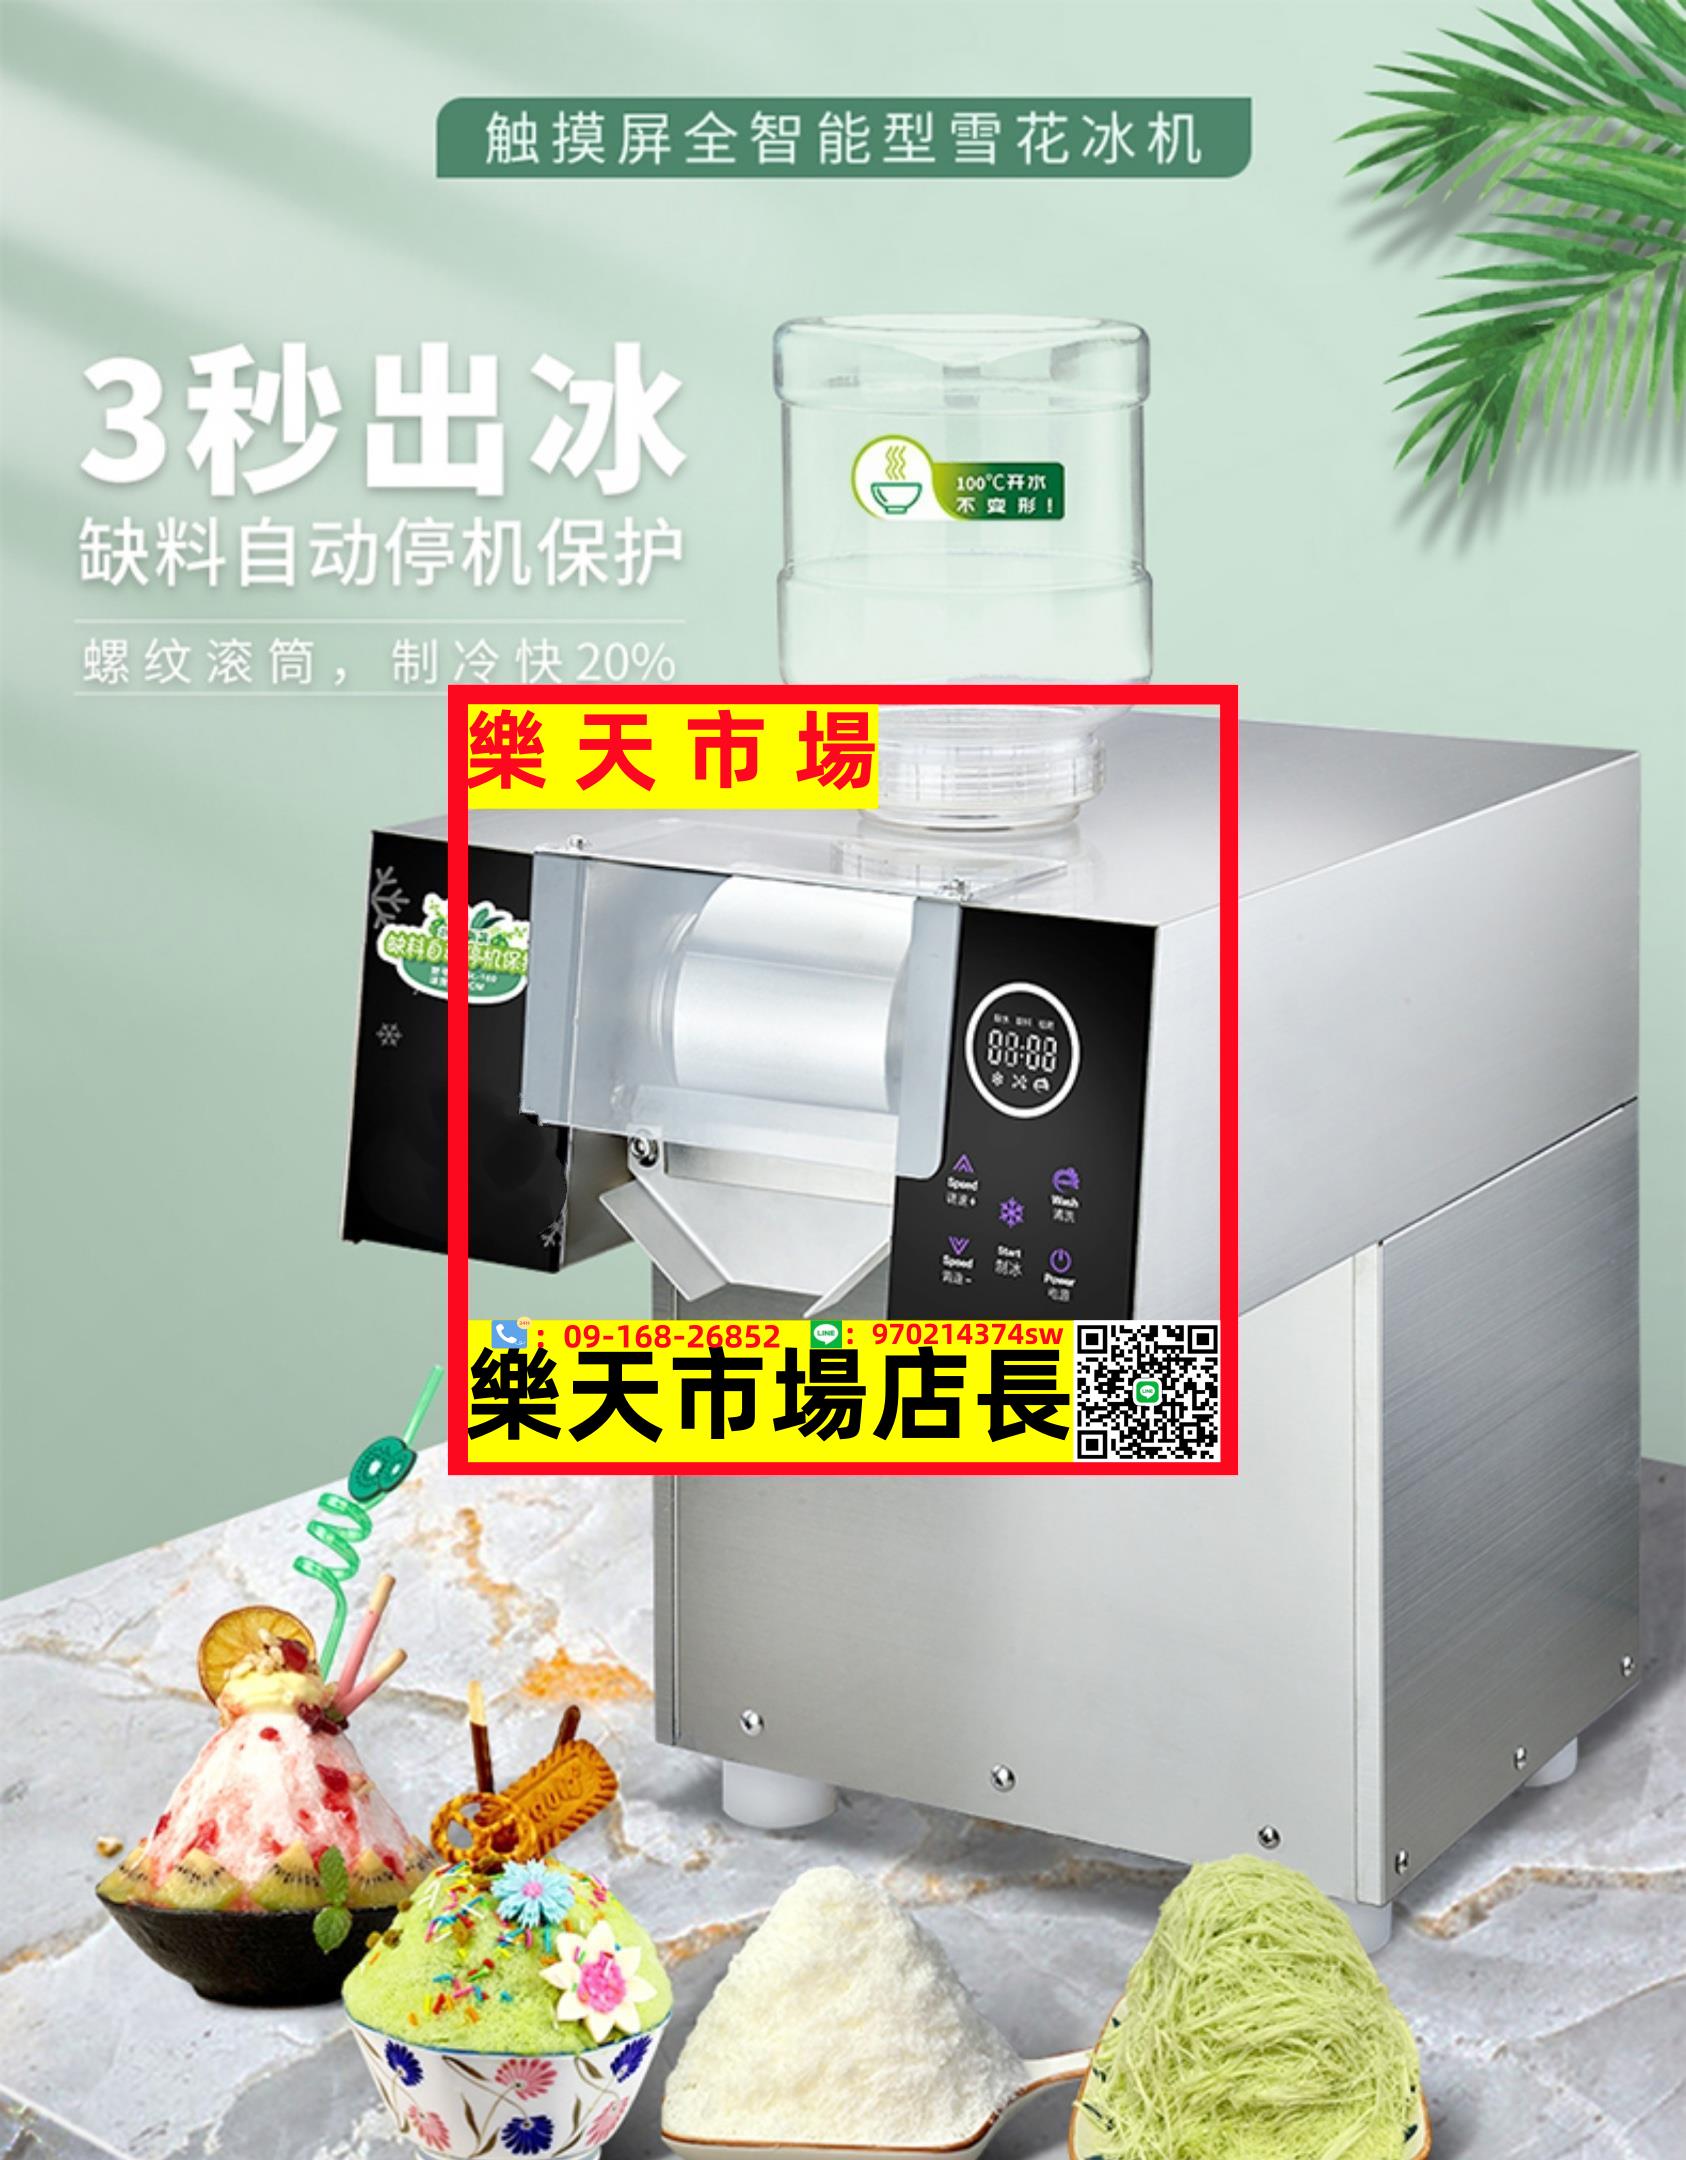 觸屏多功能電腦版商用韓國雪冰機綿綿冰冷飲膨膨冰制冰機